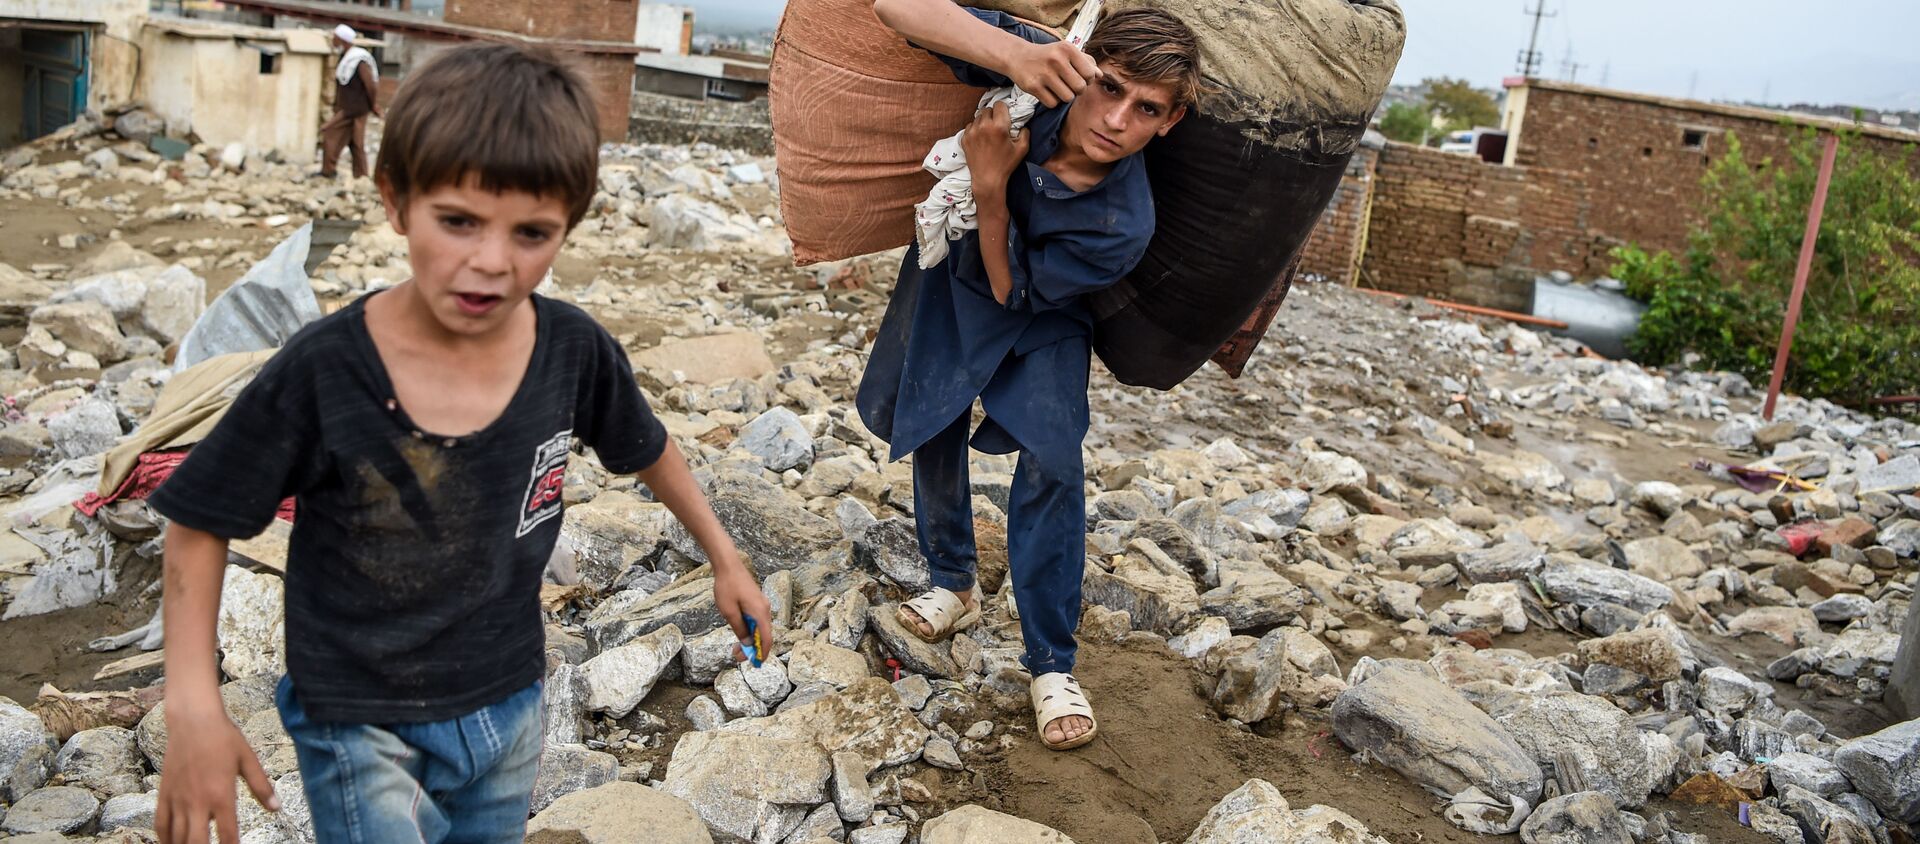 Молодые люди спасают остатки вещей из развалин домов после внезапного наводнения в Чарикаре, провинция Парван, Афганистан - Sputnik Қазақстан, 1920, 28.04.2021